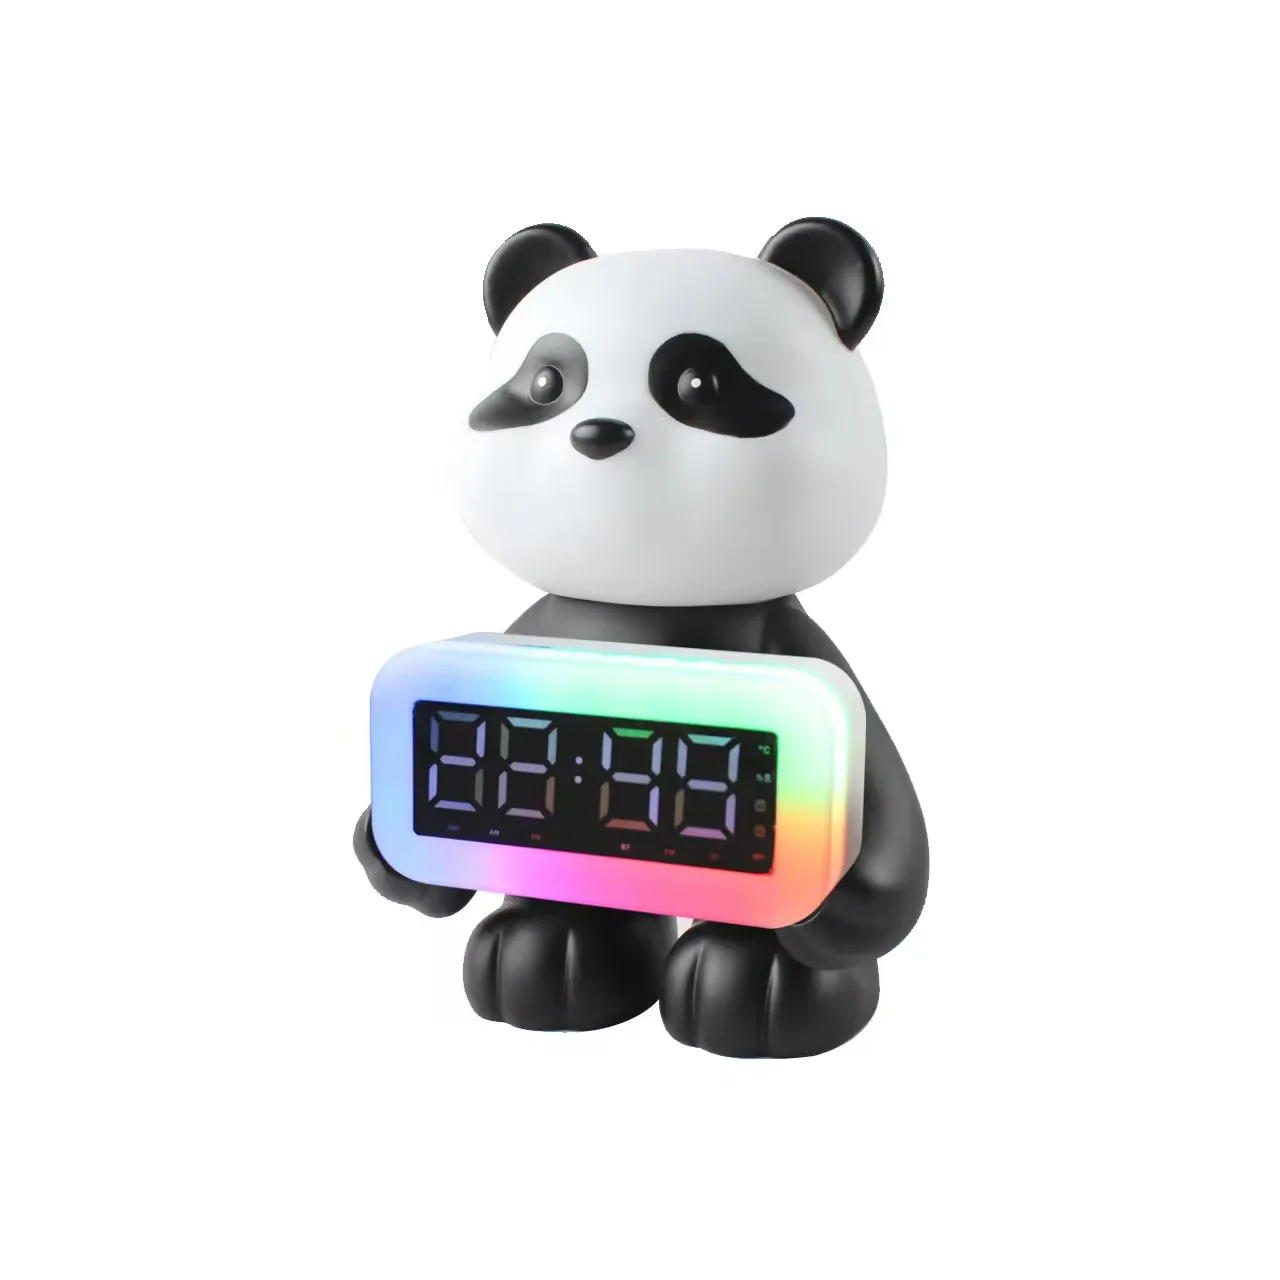 Altoparlante Bluetooth creativo intelligente Panda LED con sveglia digitale TF FM luce notturna regalo di compleanno per bambini